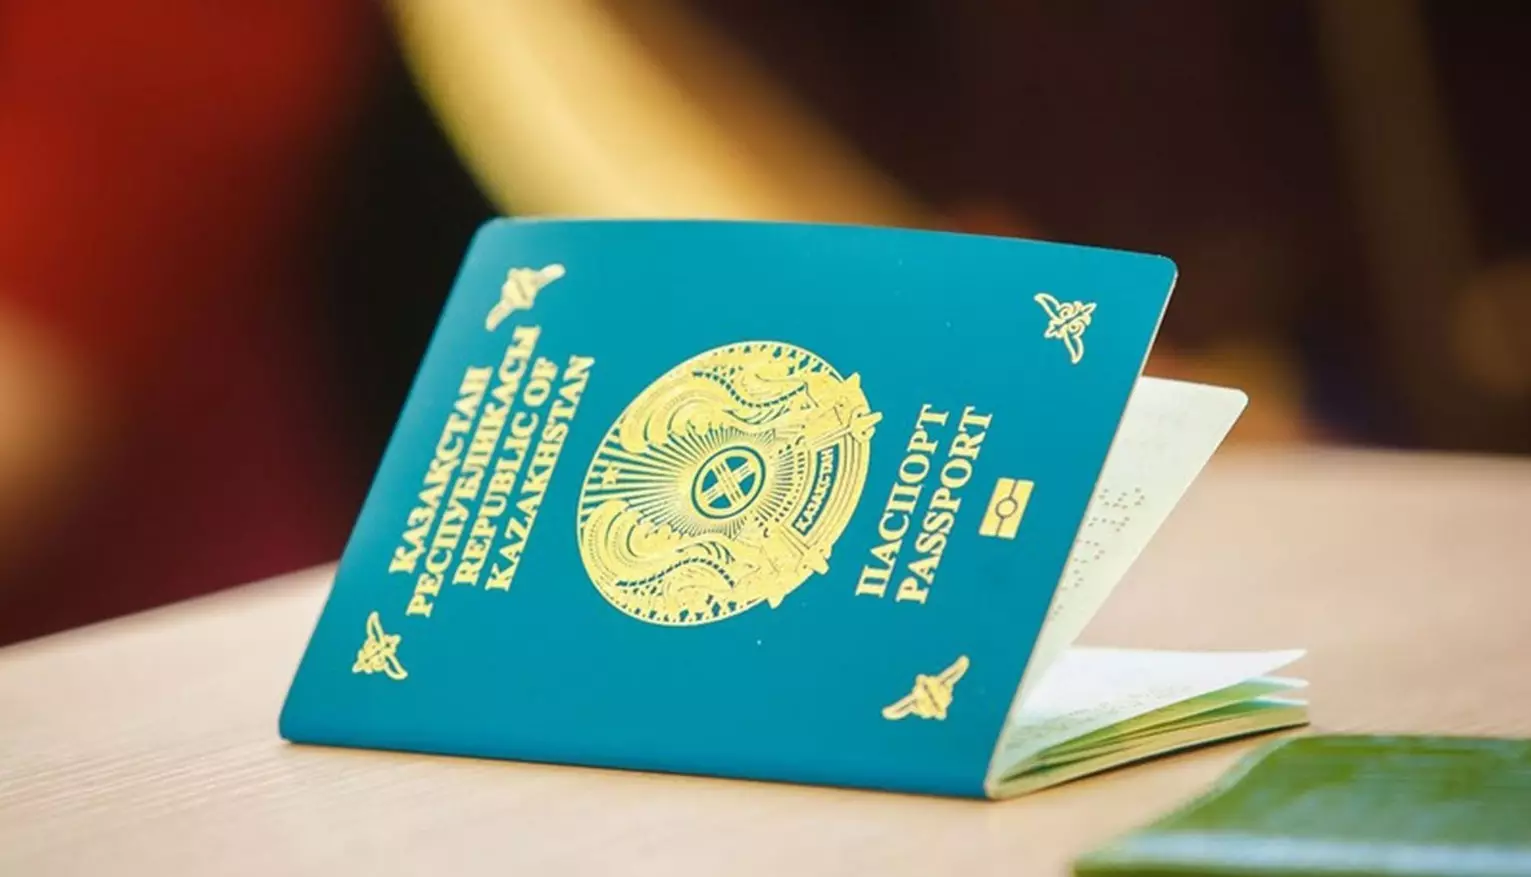 Функции МИД Казахстана изменили по части паспортизации и взаимодействия с кандасами